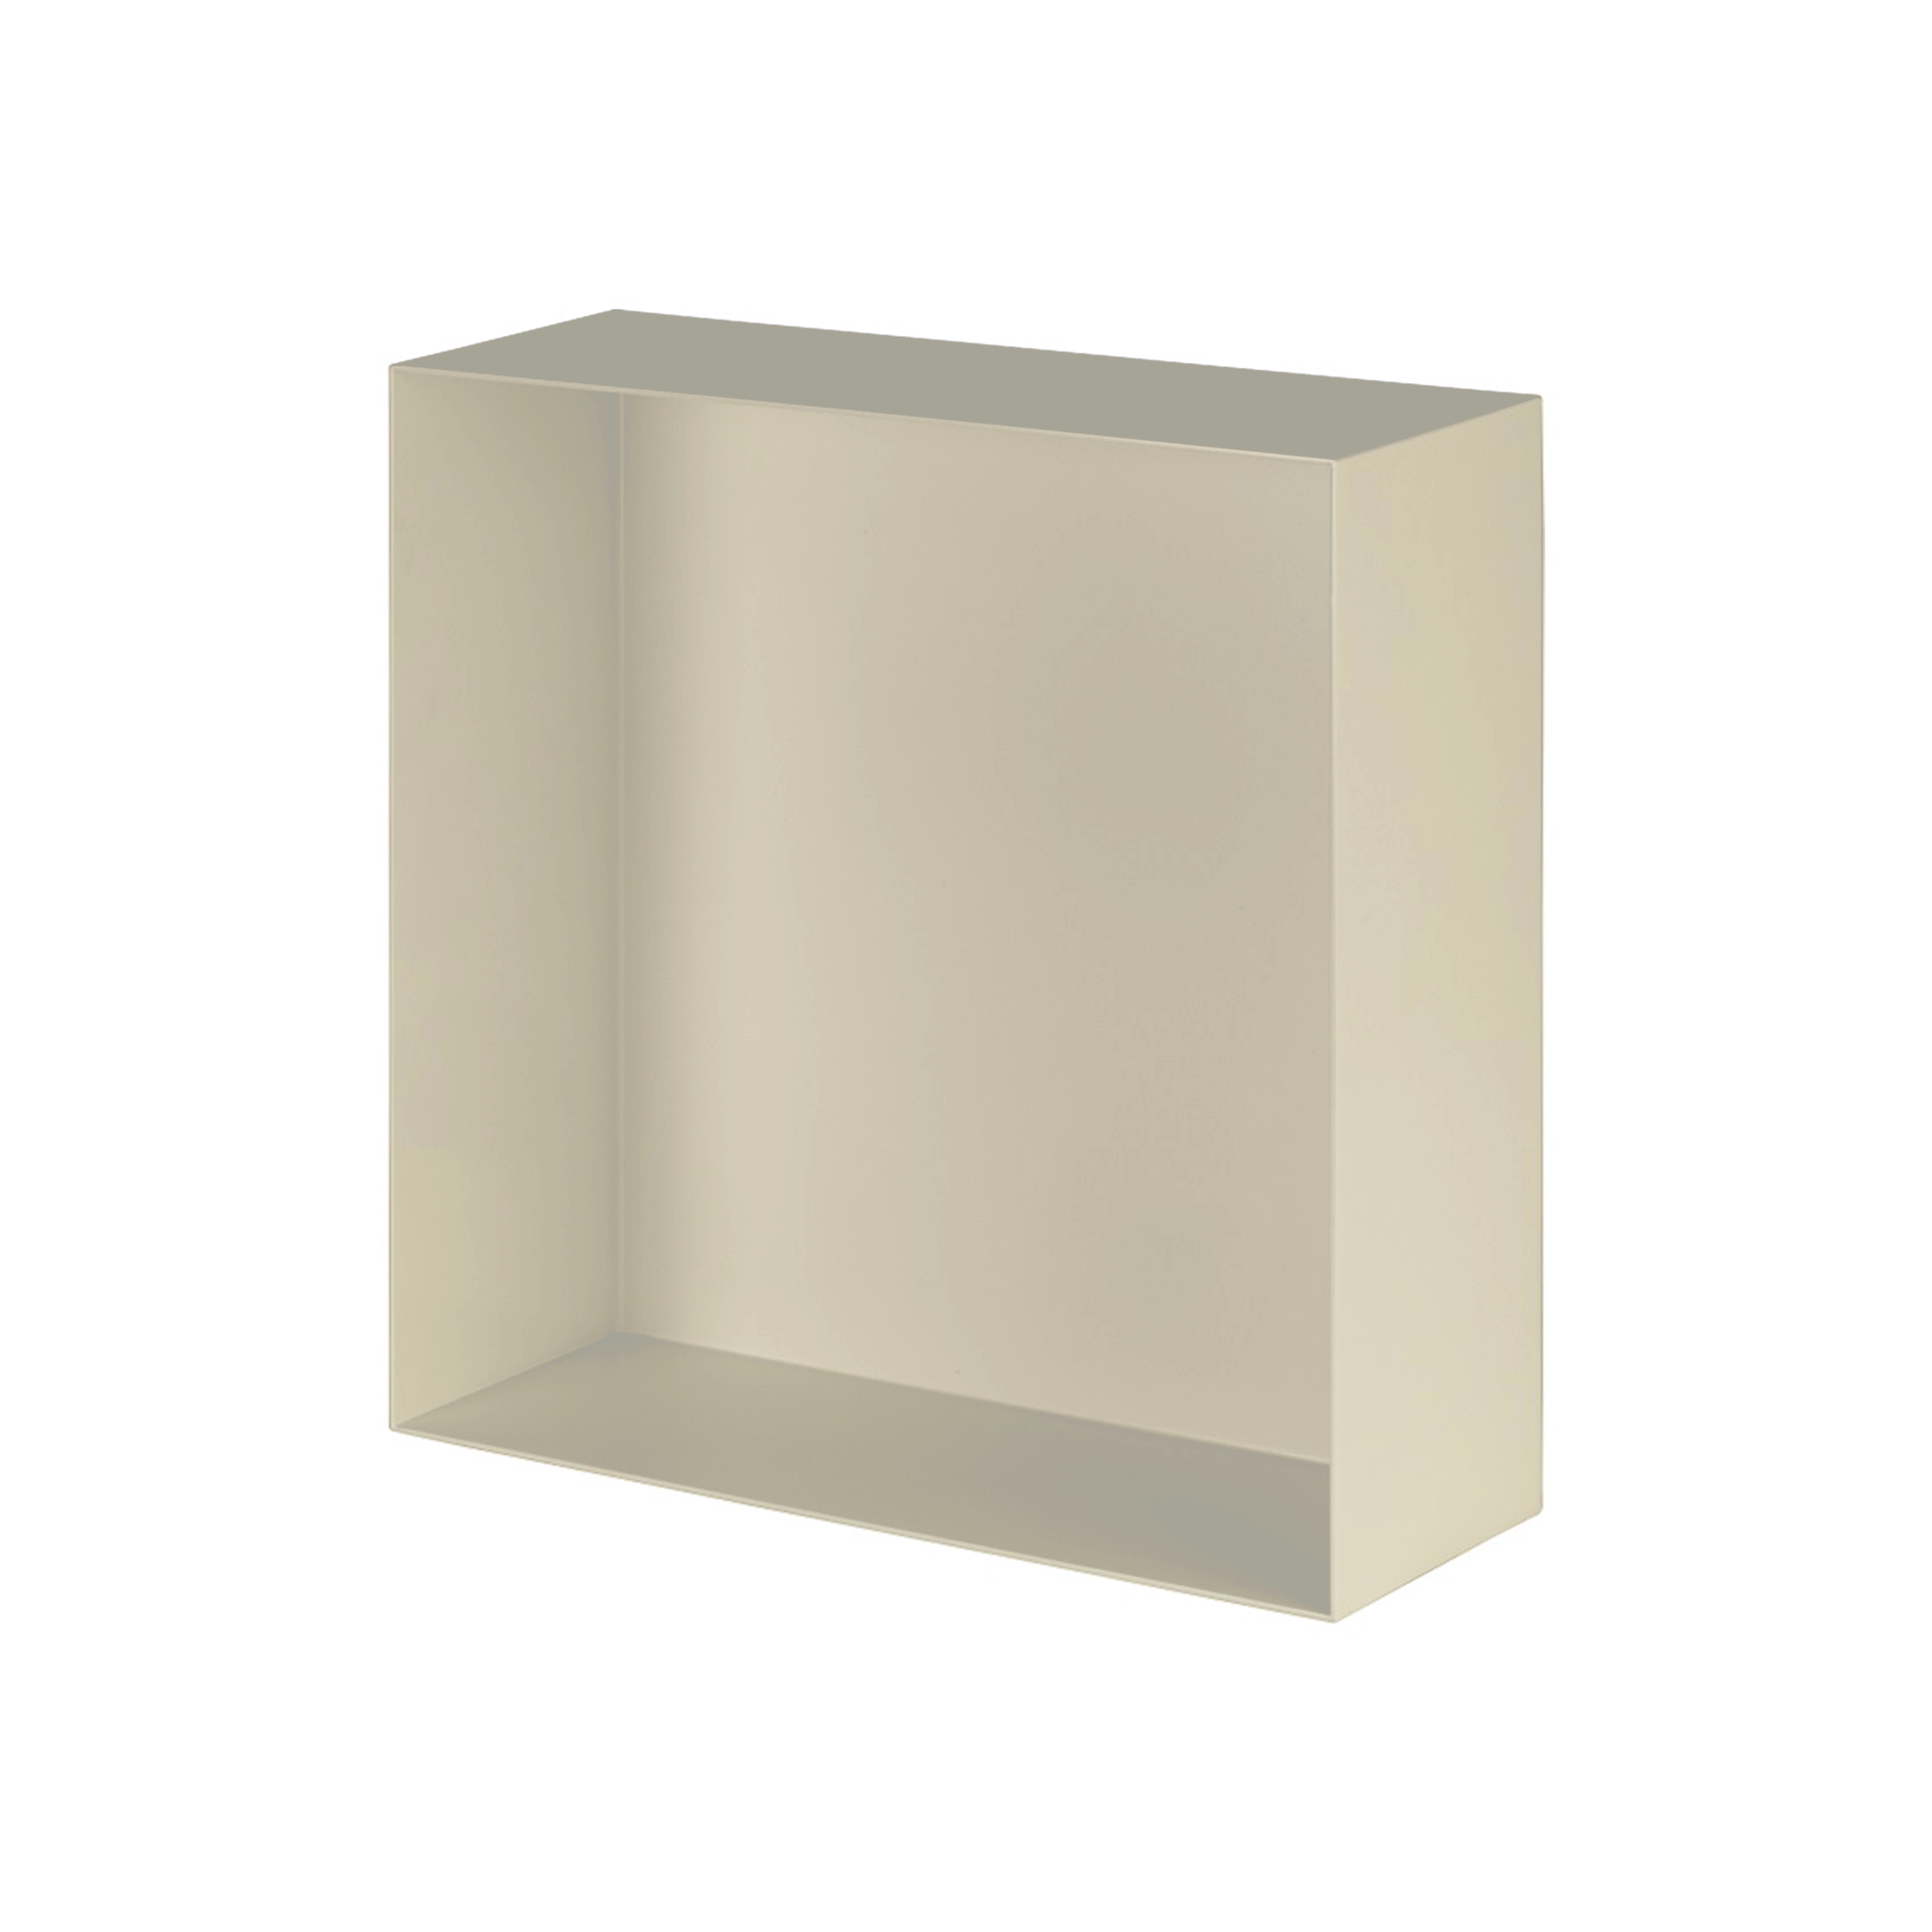 Valli Home – V-Box, Nicchia portaoggetti in Metallo smaltato color Grigio Chiarissimo KK62, Misura 30X30 P. 10 cm – V-BOX.MLLO.30X30.62